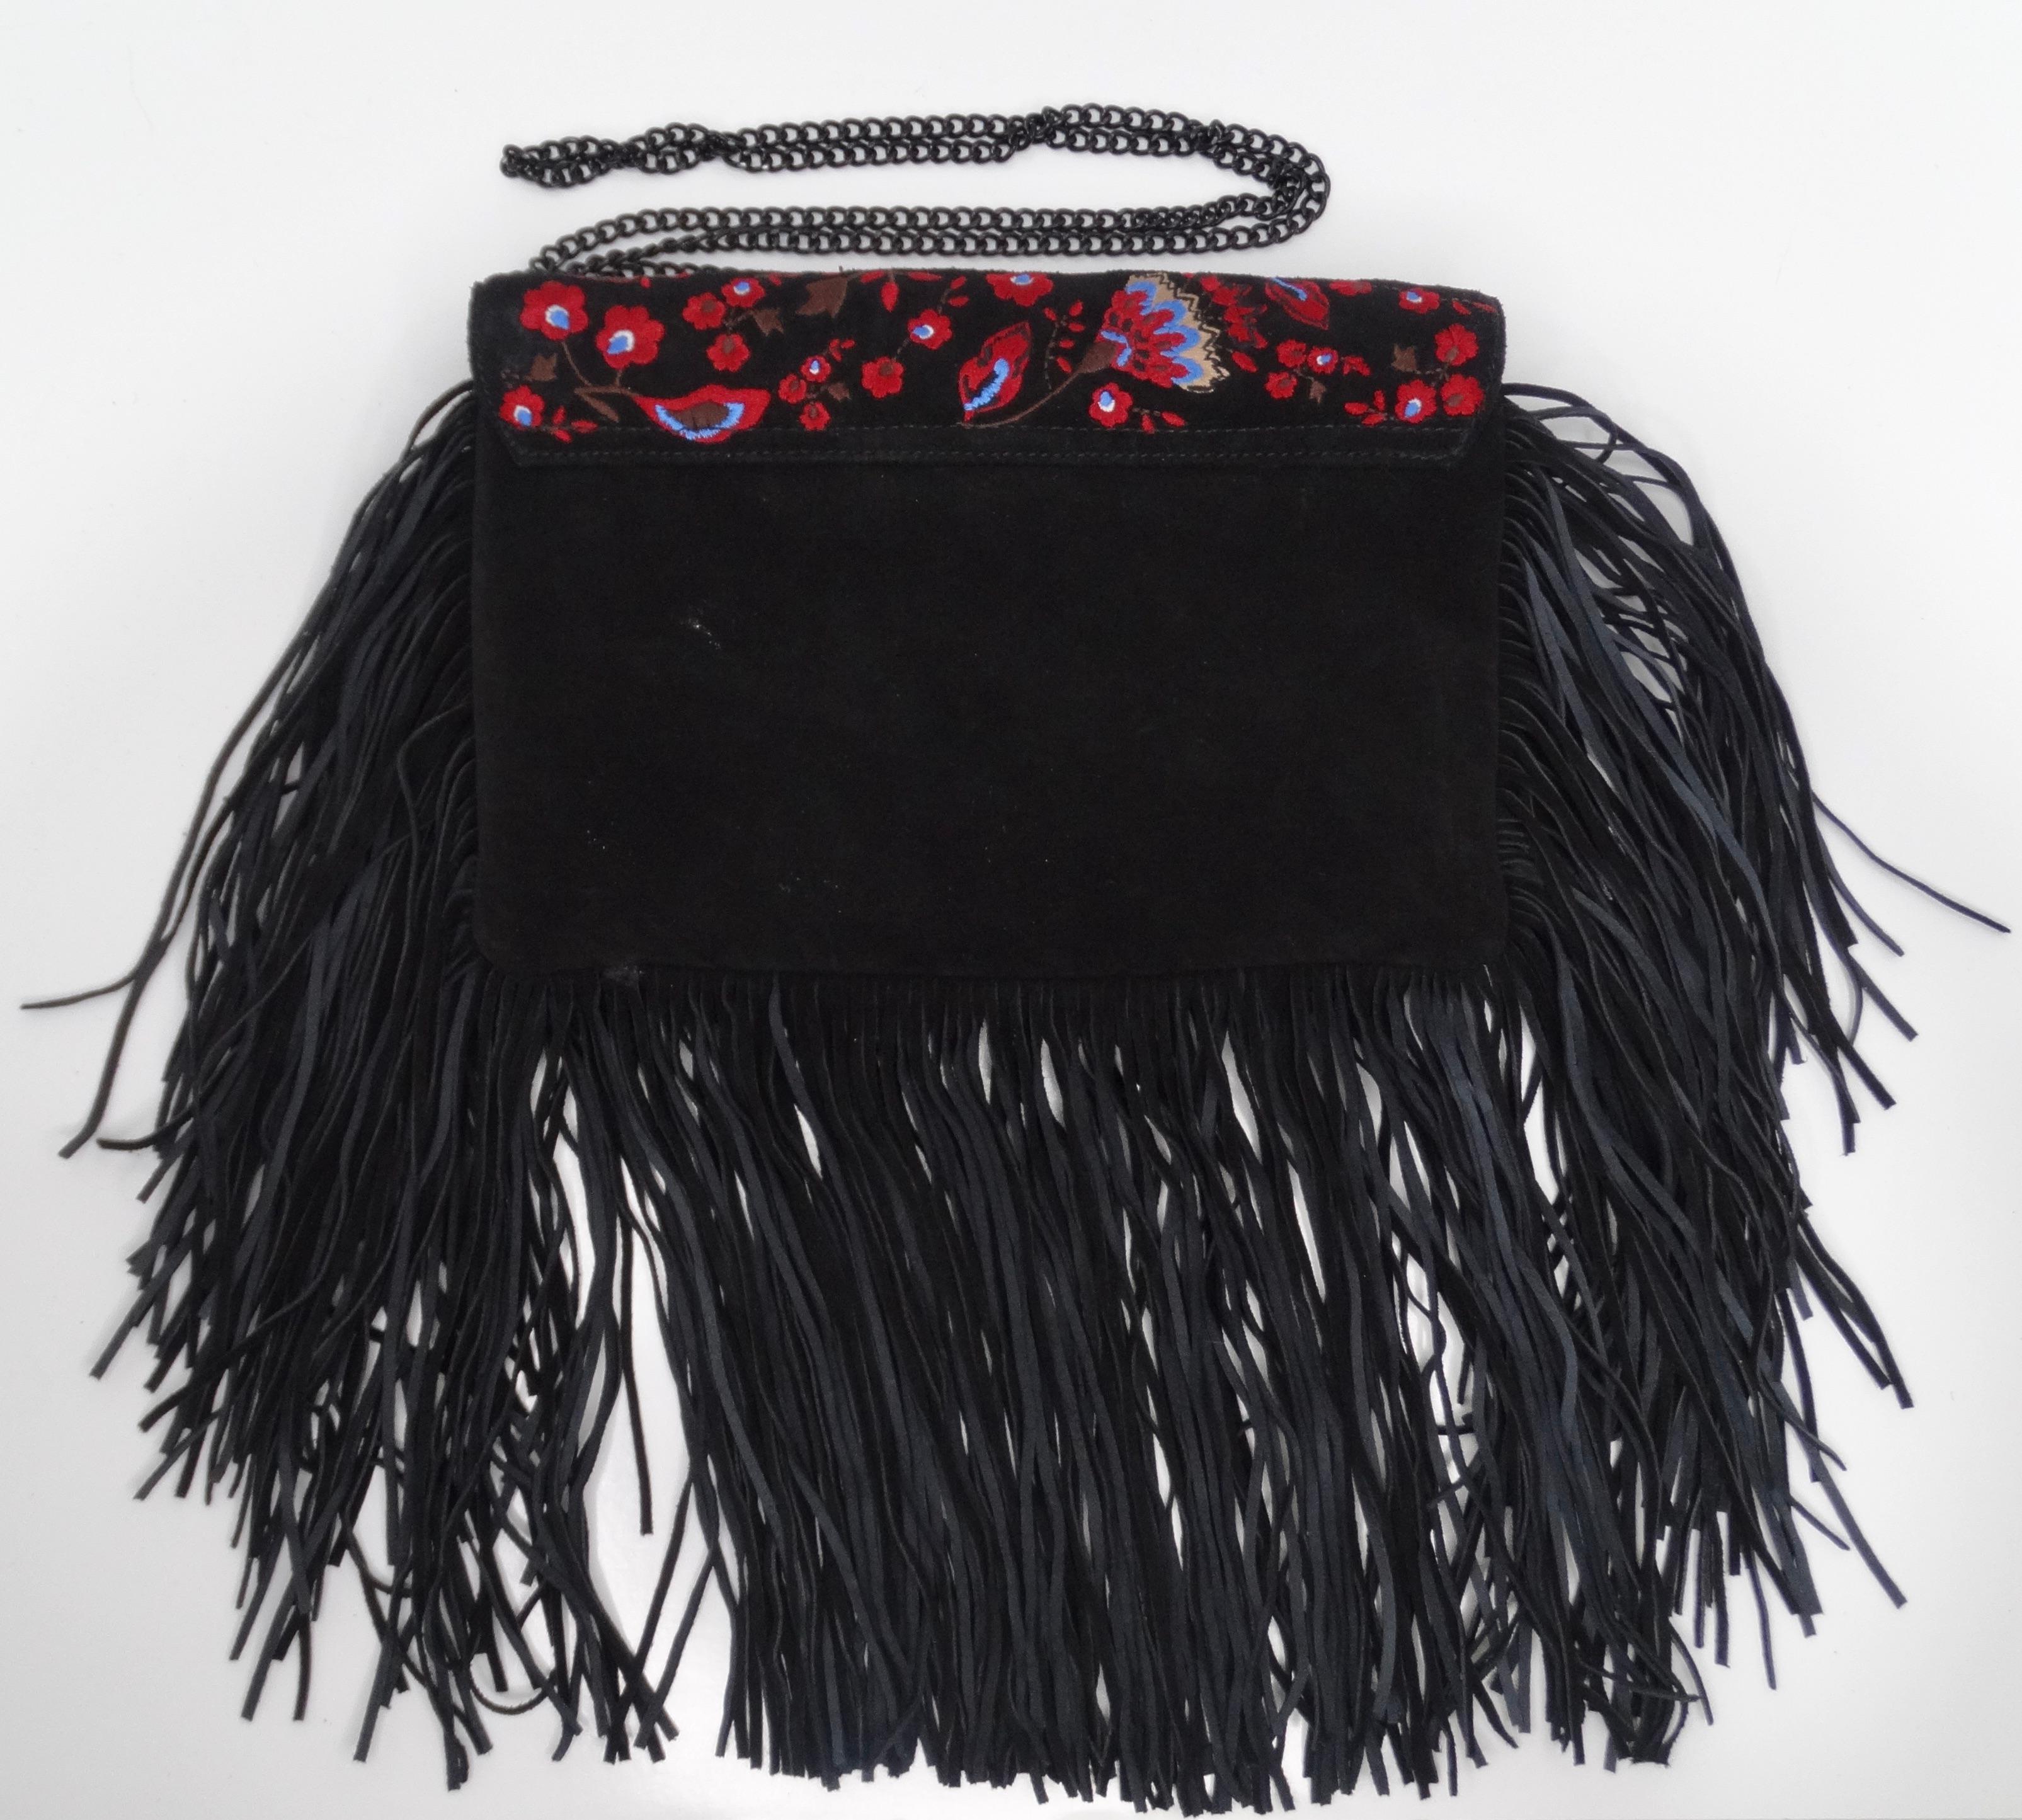 Loeffler Randall Embroidered Suede Fringe Handbag For Sale 1